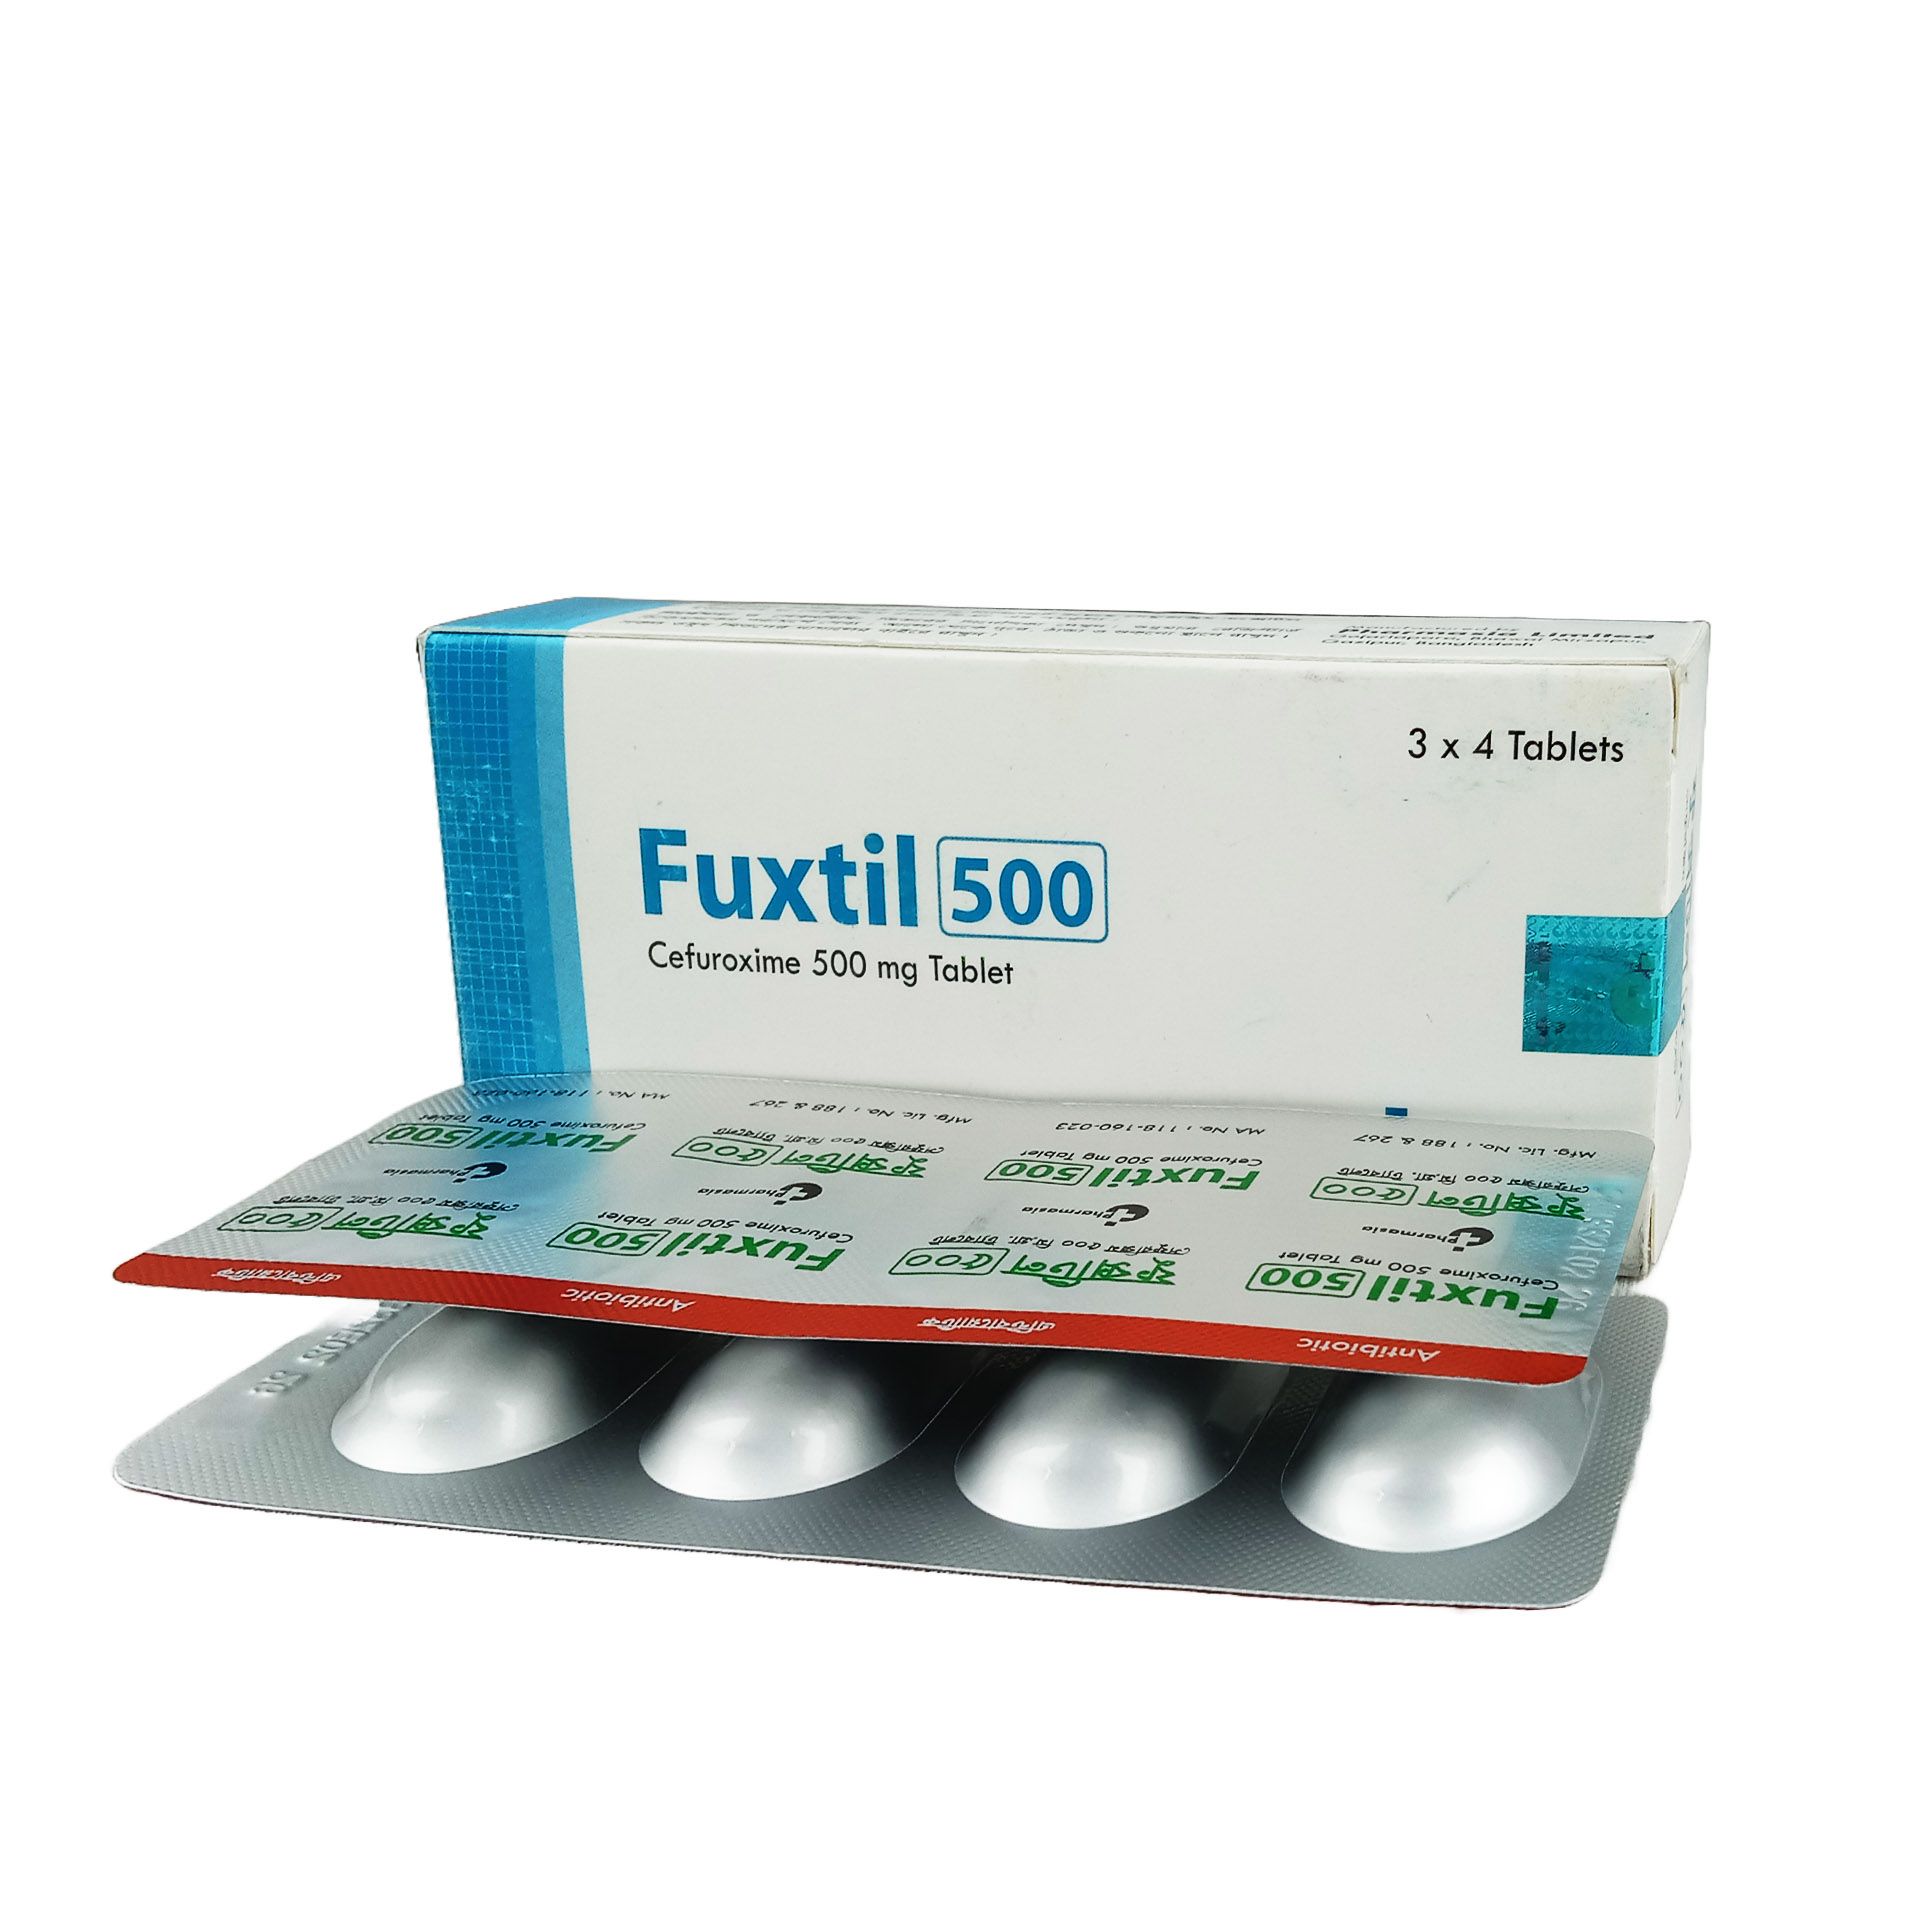 Fuxtil 500mg Tablet